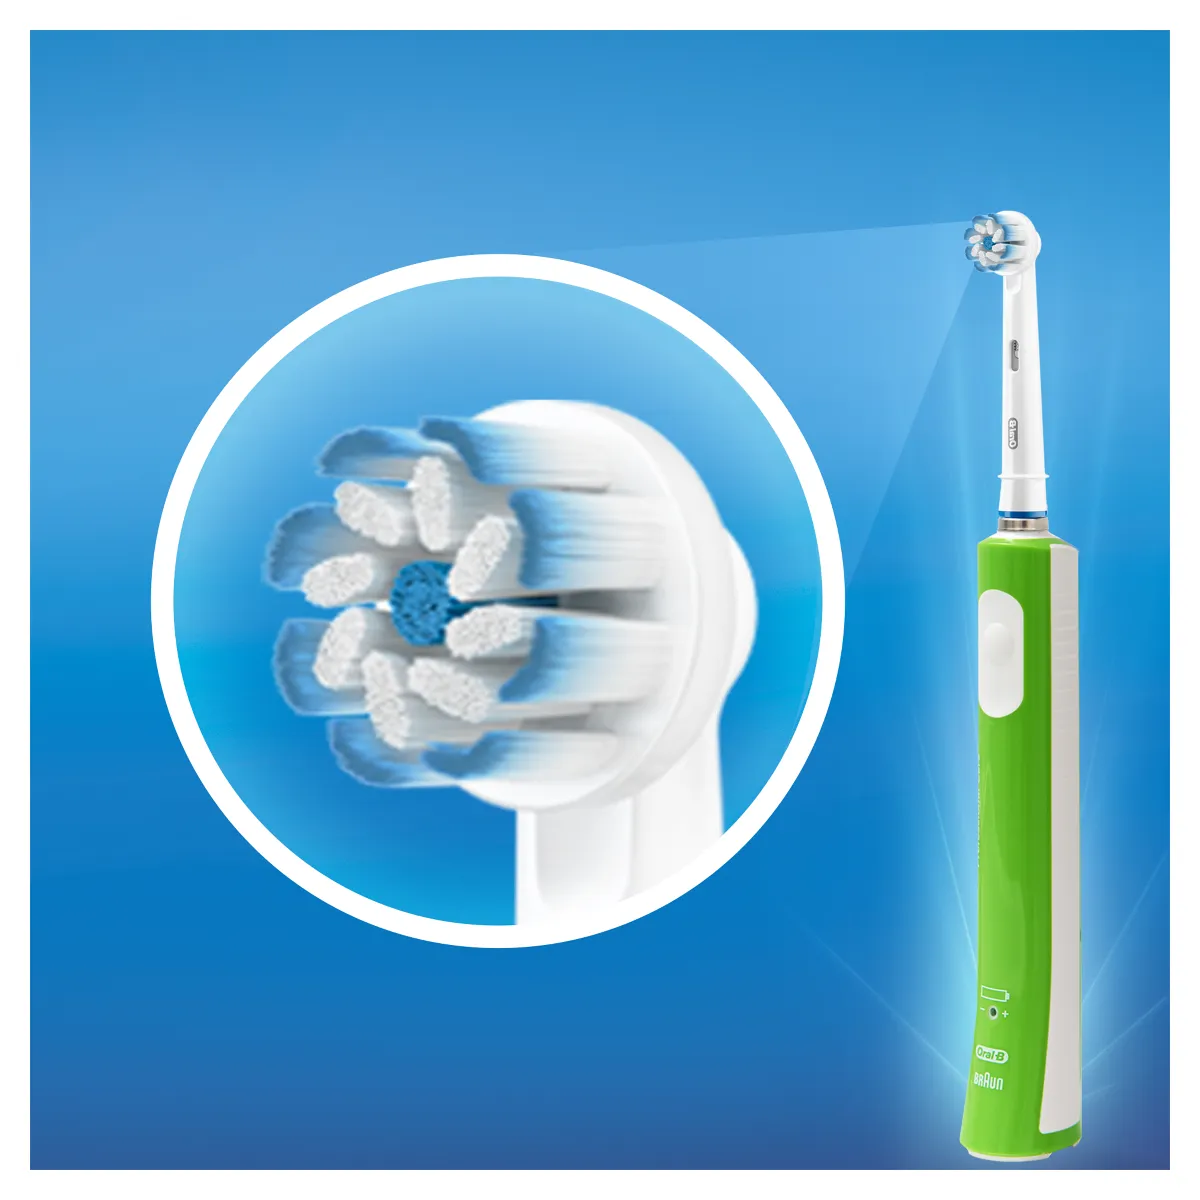 Oral B Elektrická zubná kefka Junior sensitive 1×1 ks, detská zubná kefka